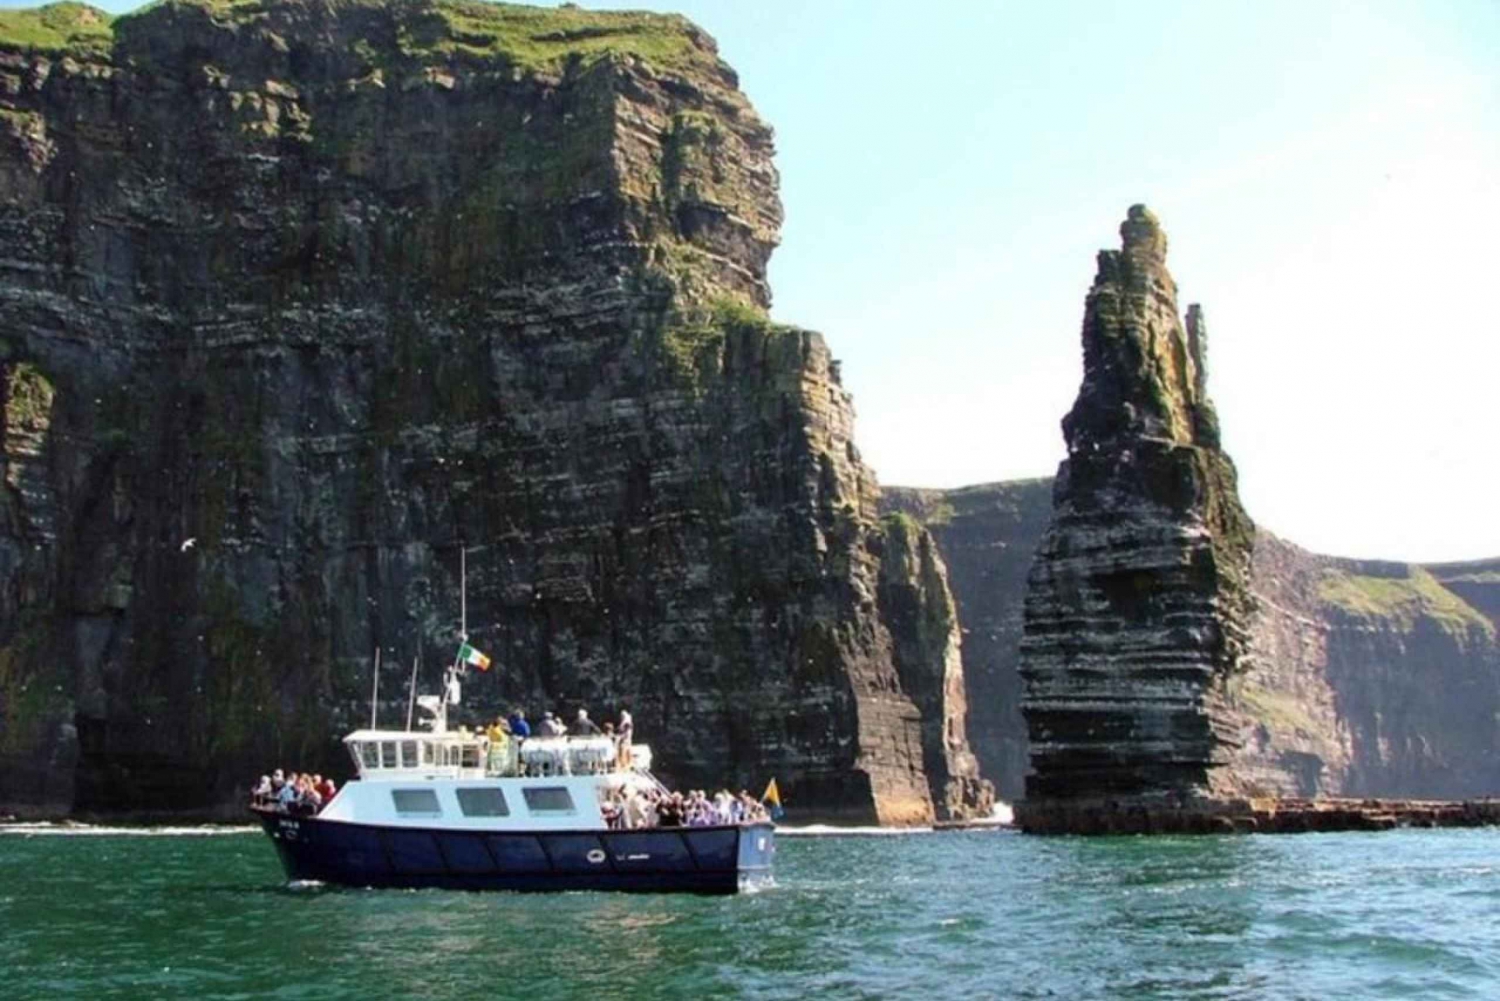 Dublinista: Cliffs of Moher, laivaristeily ja Aillween luola